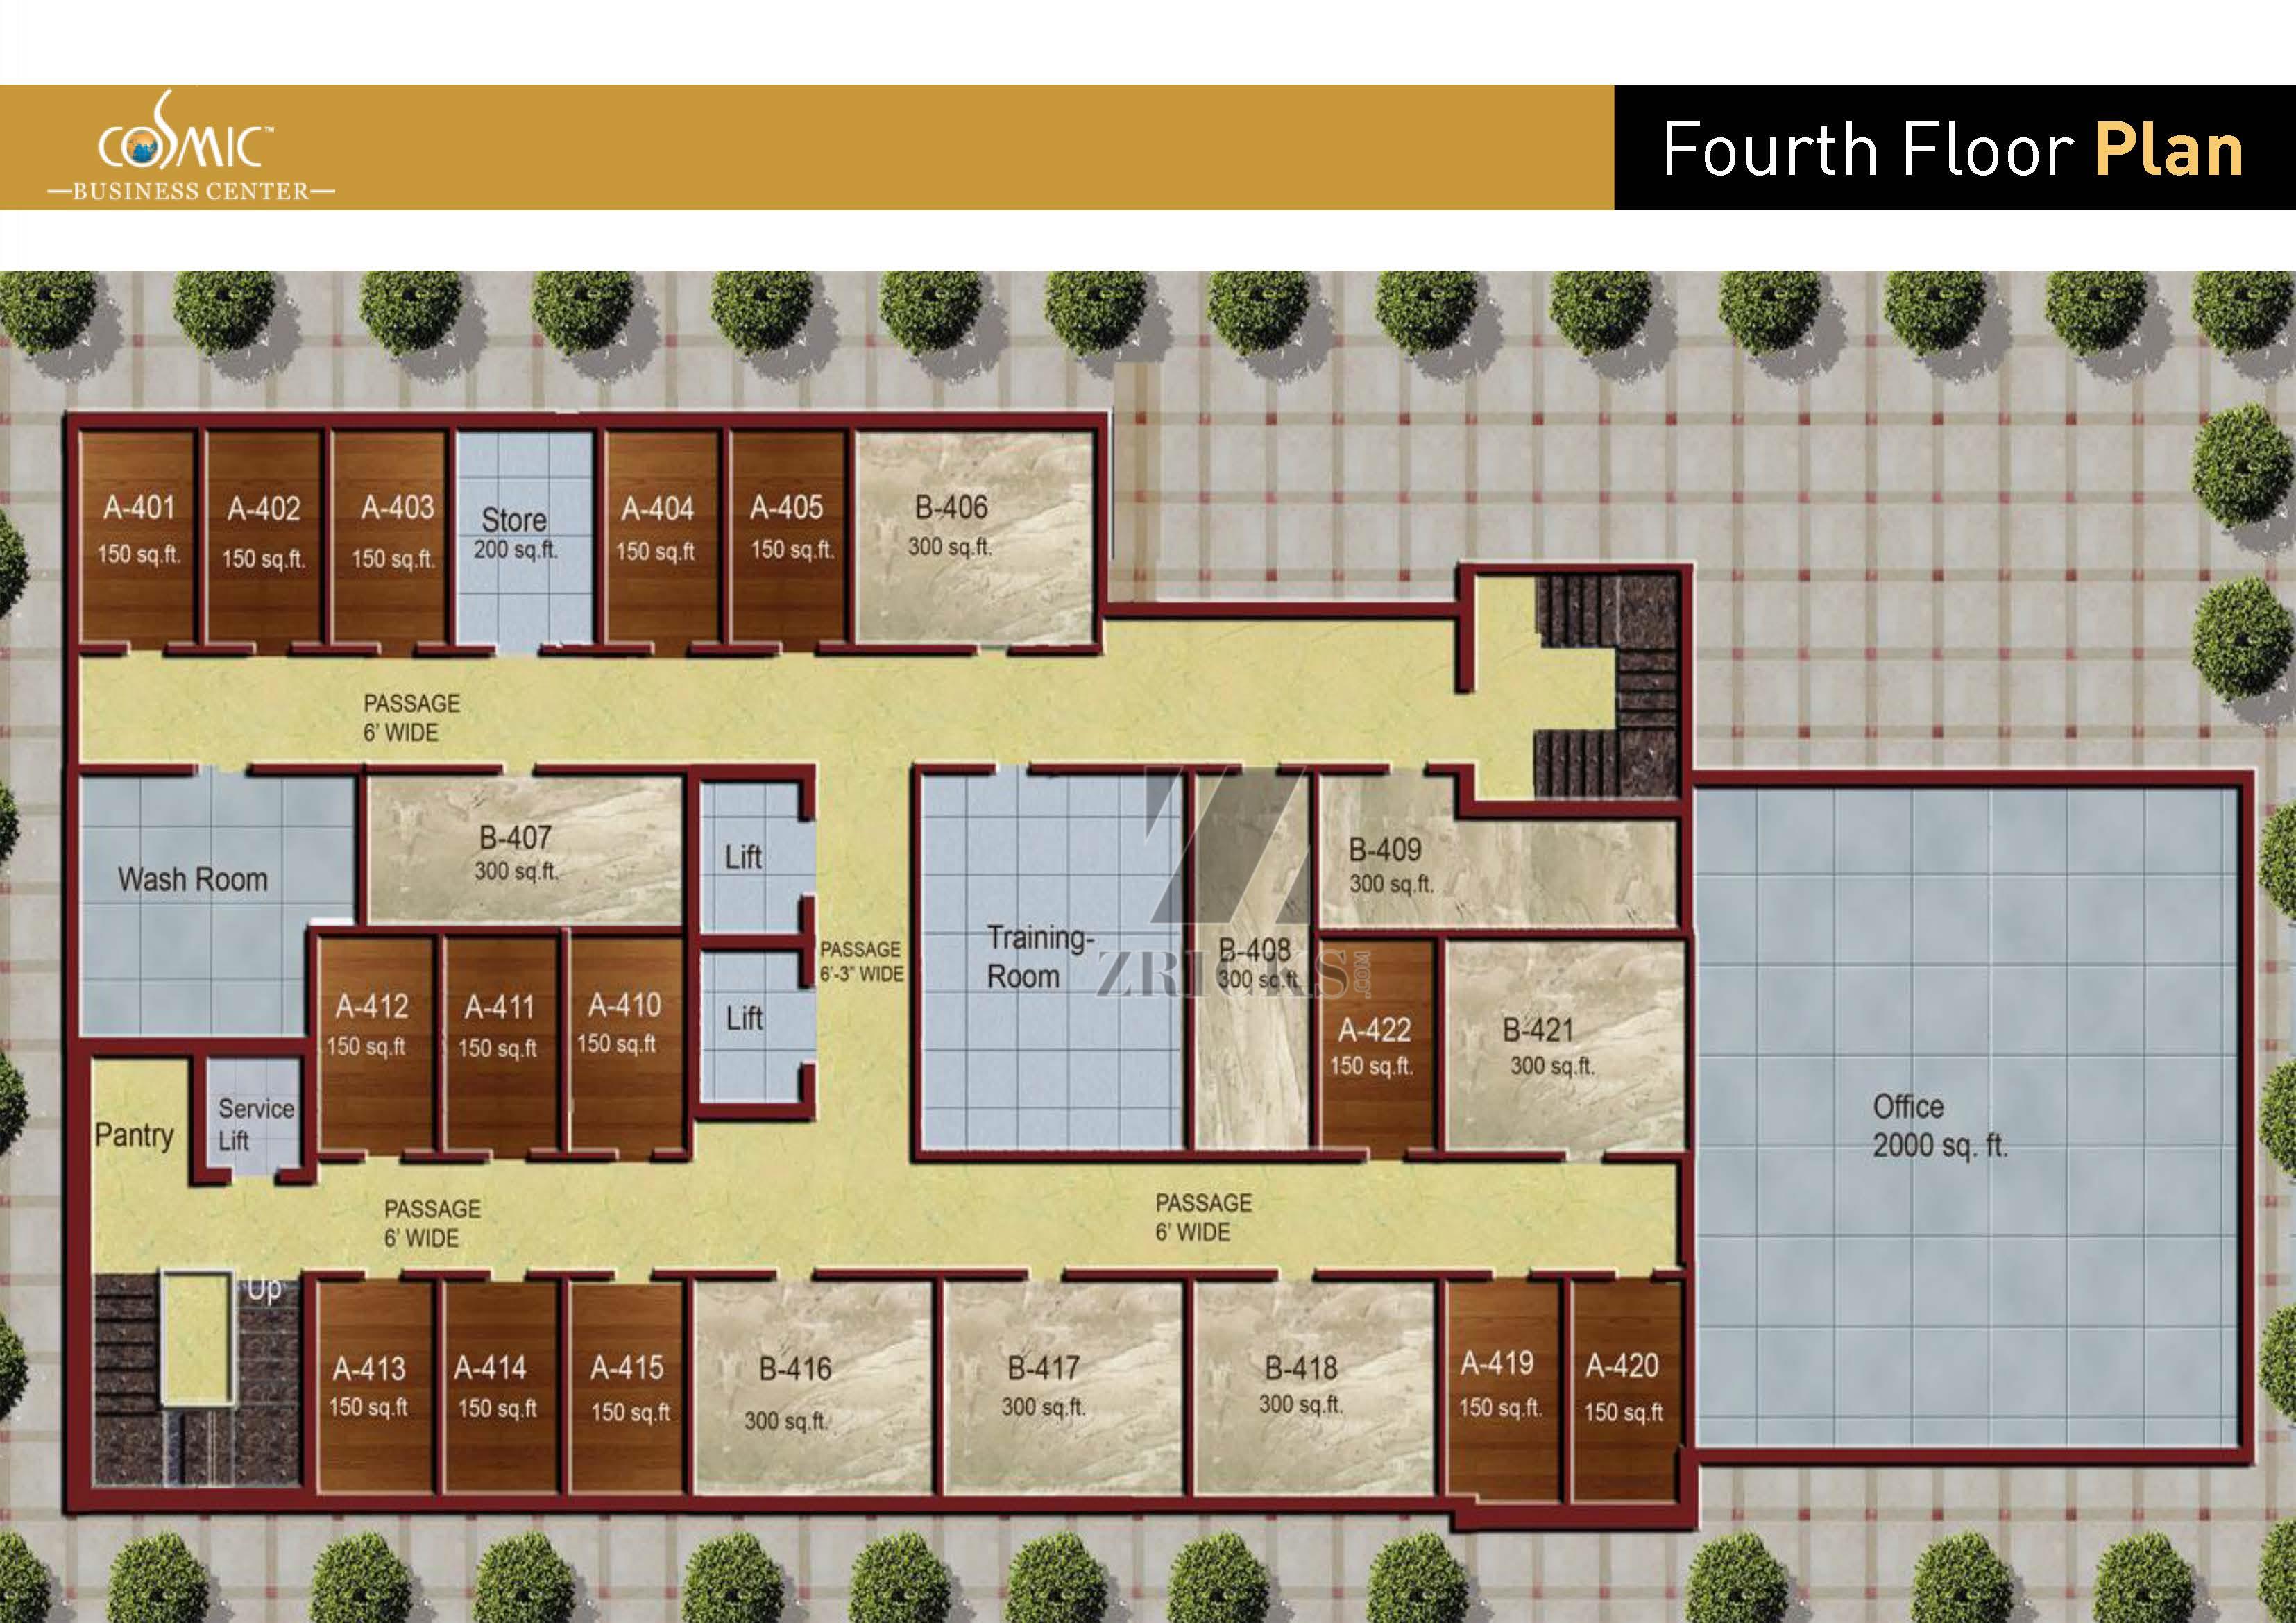 Cosmic Business Center Floor Plan